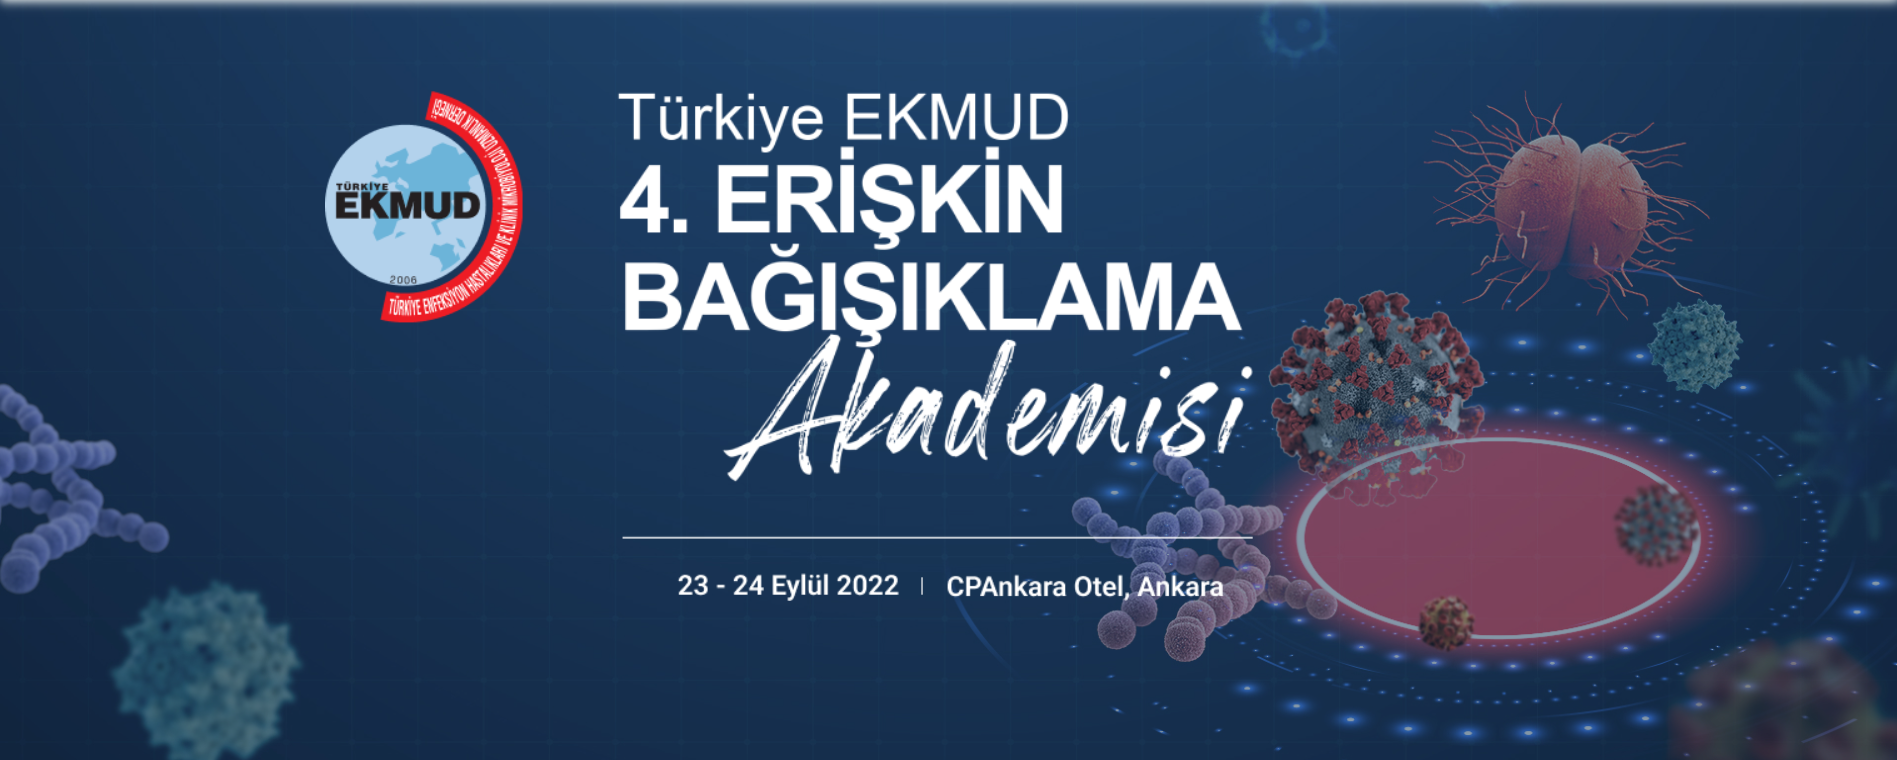 Türkiye EKMUD 4. Erişkin Bağışıklama Akademisi